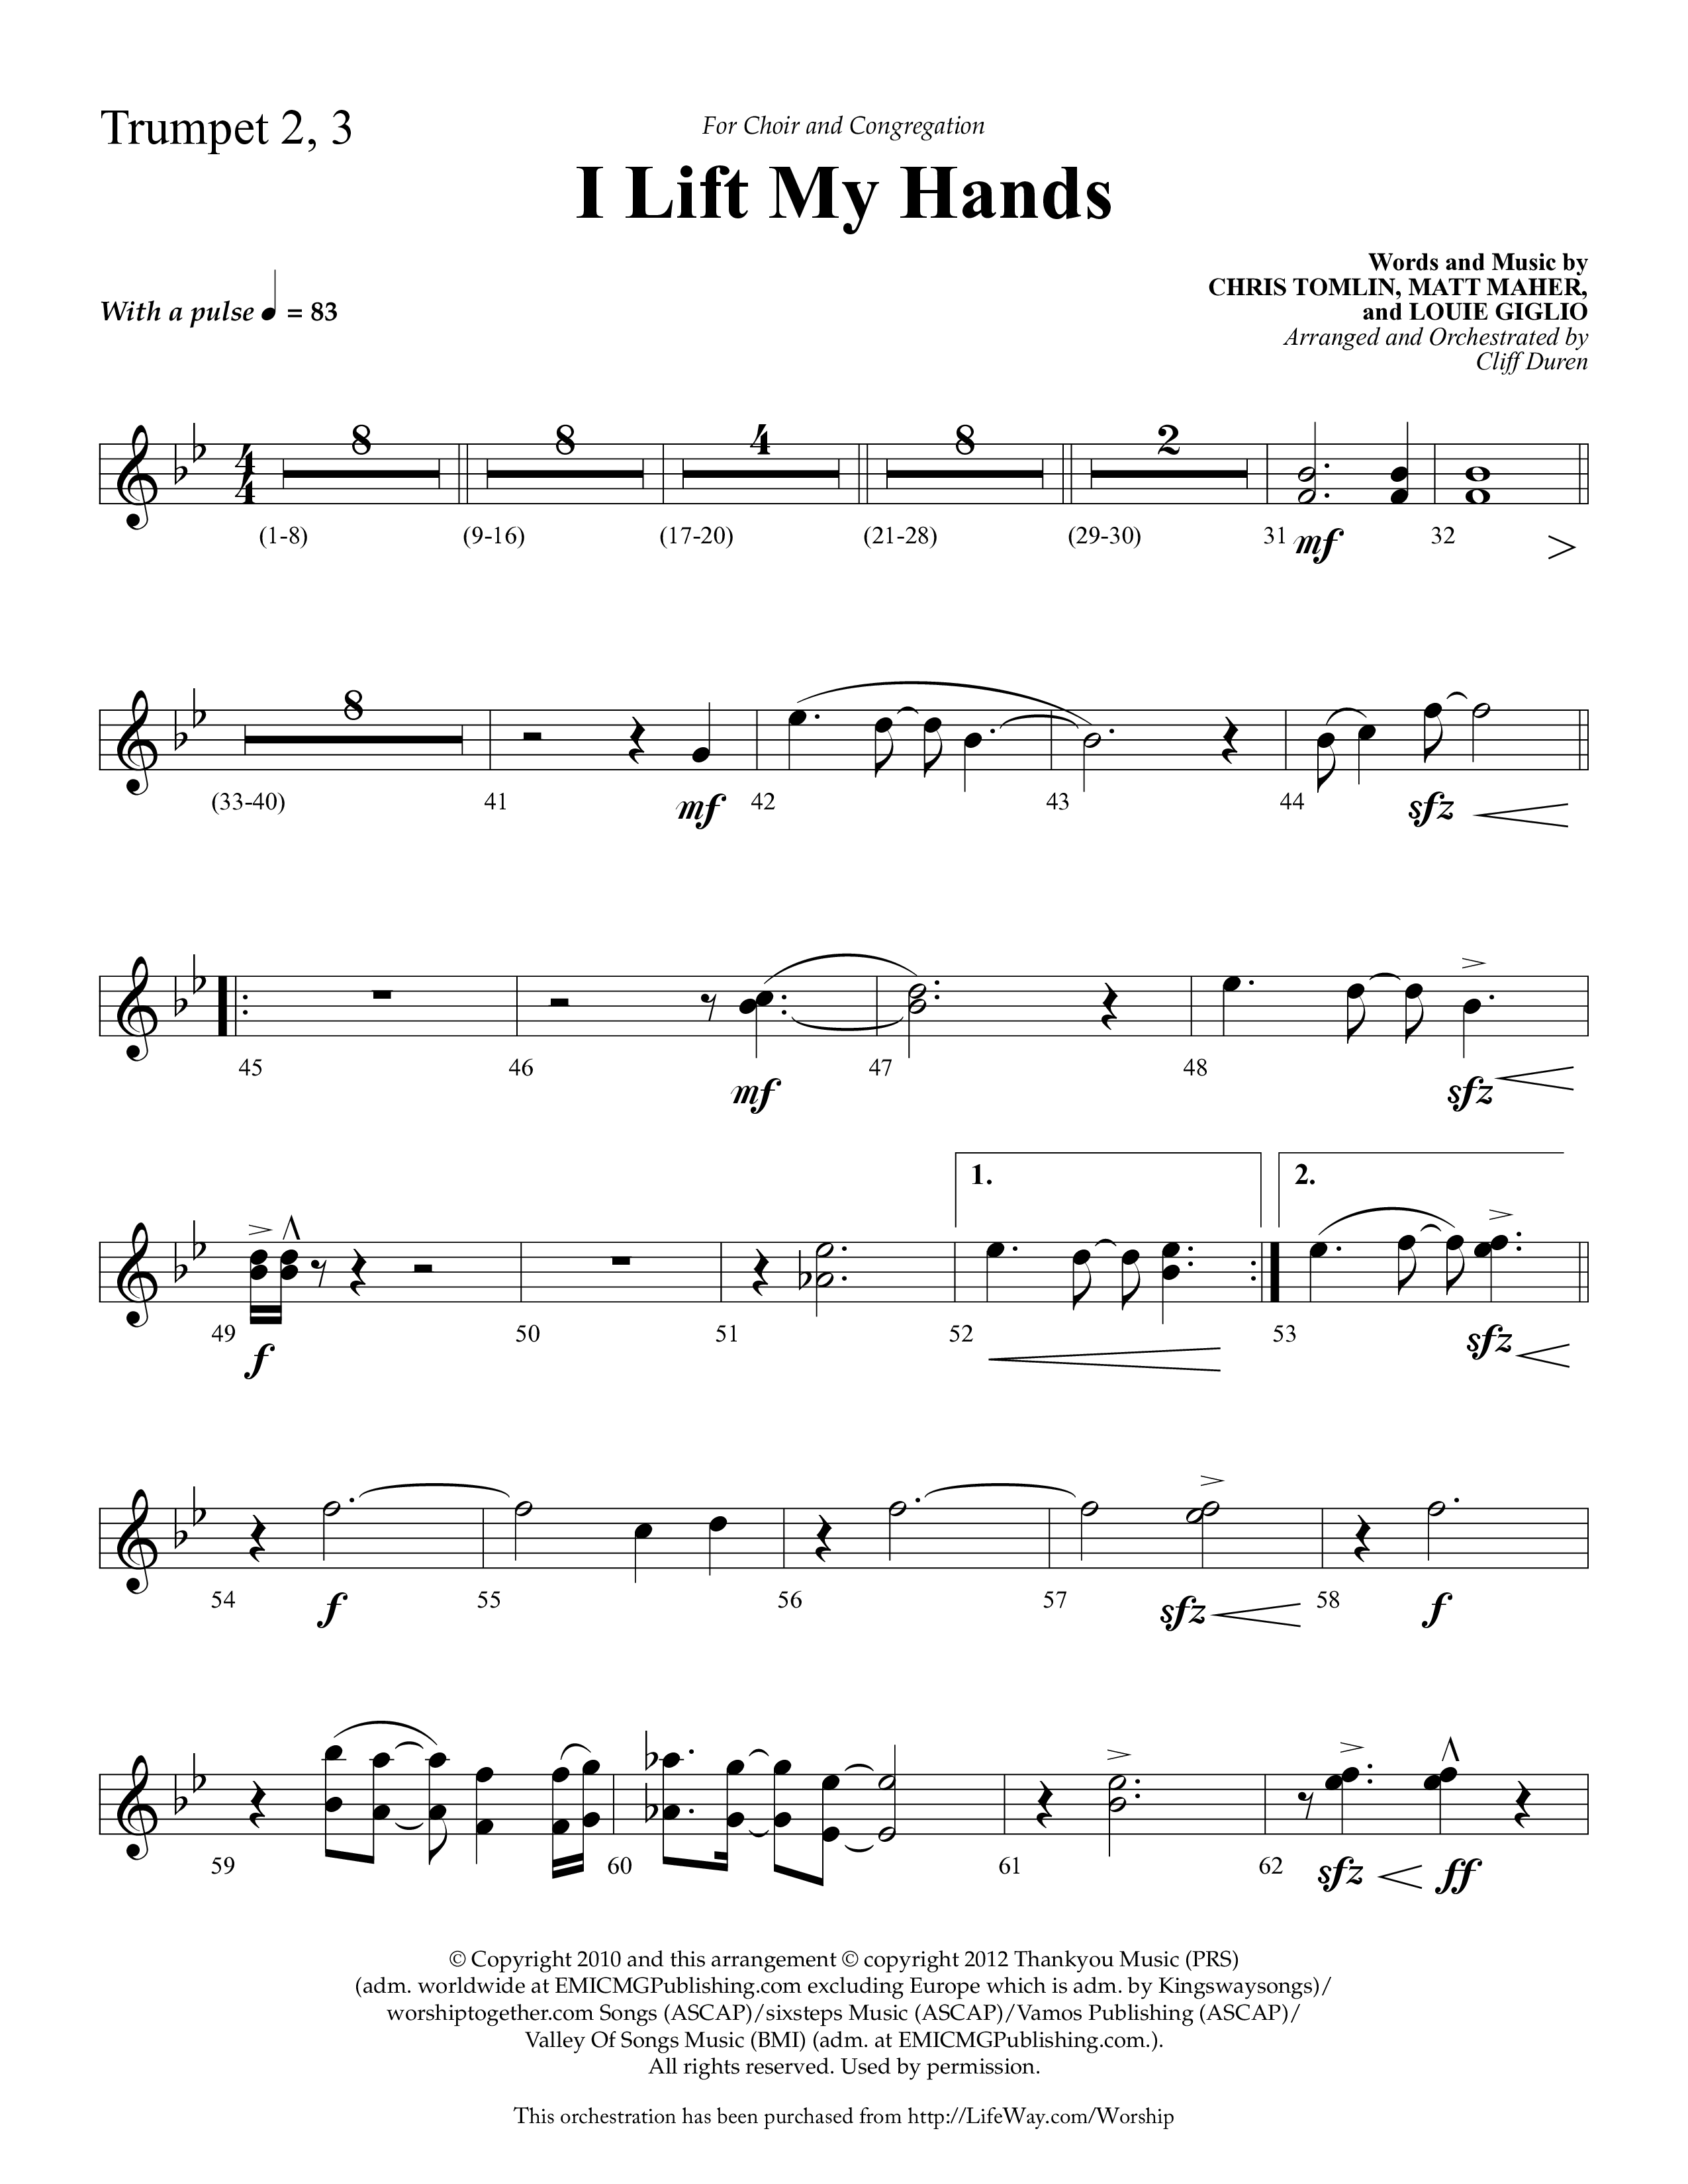 I Lift My Hands (Choral Anthem SATB) Trumpet 2/3 (Lifeway Choral / Arr. Cliff Duren)